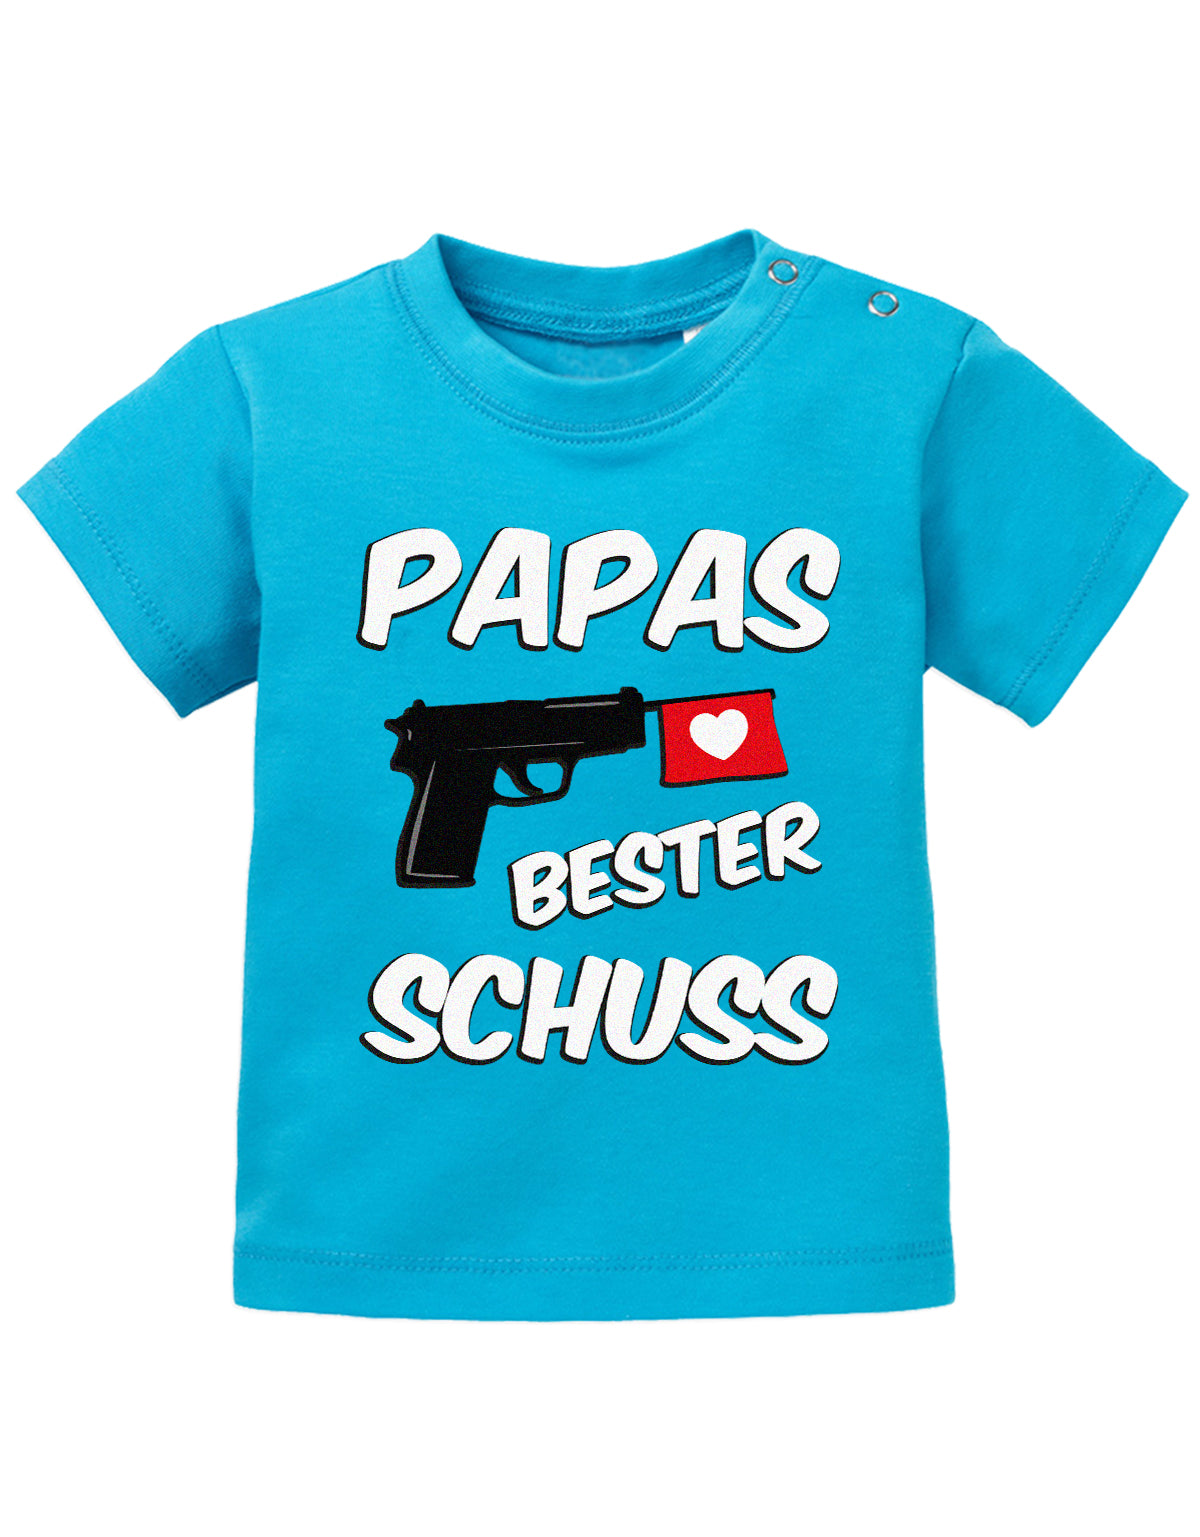 Lustiges süßes Sprüche Baby Shirt Papas bester Schuss Blau